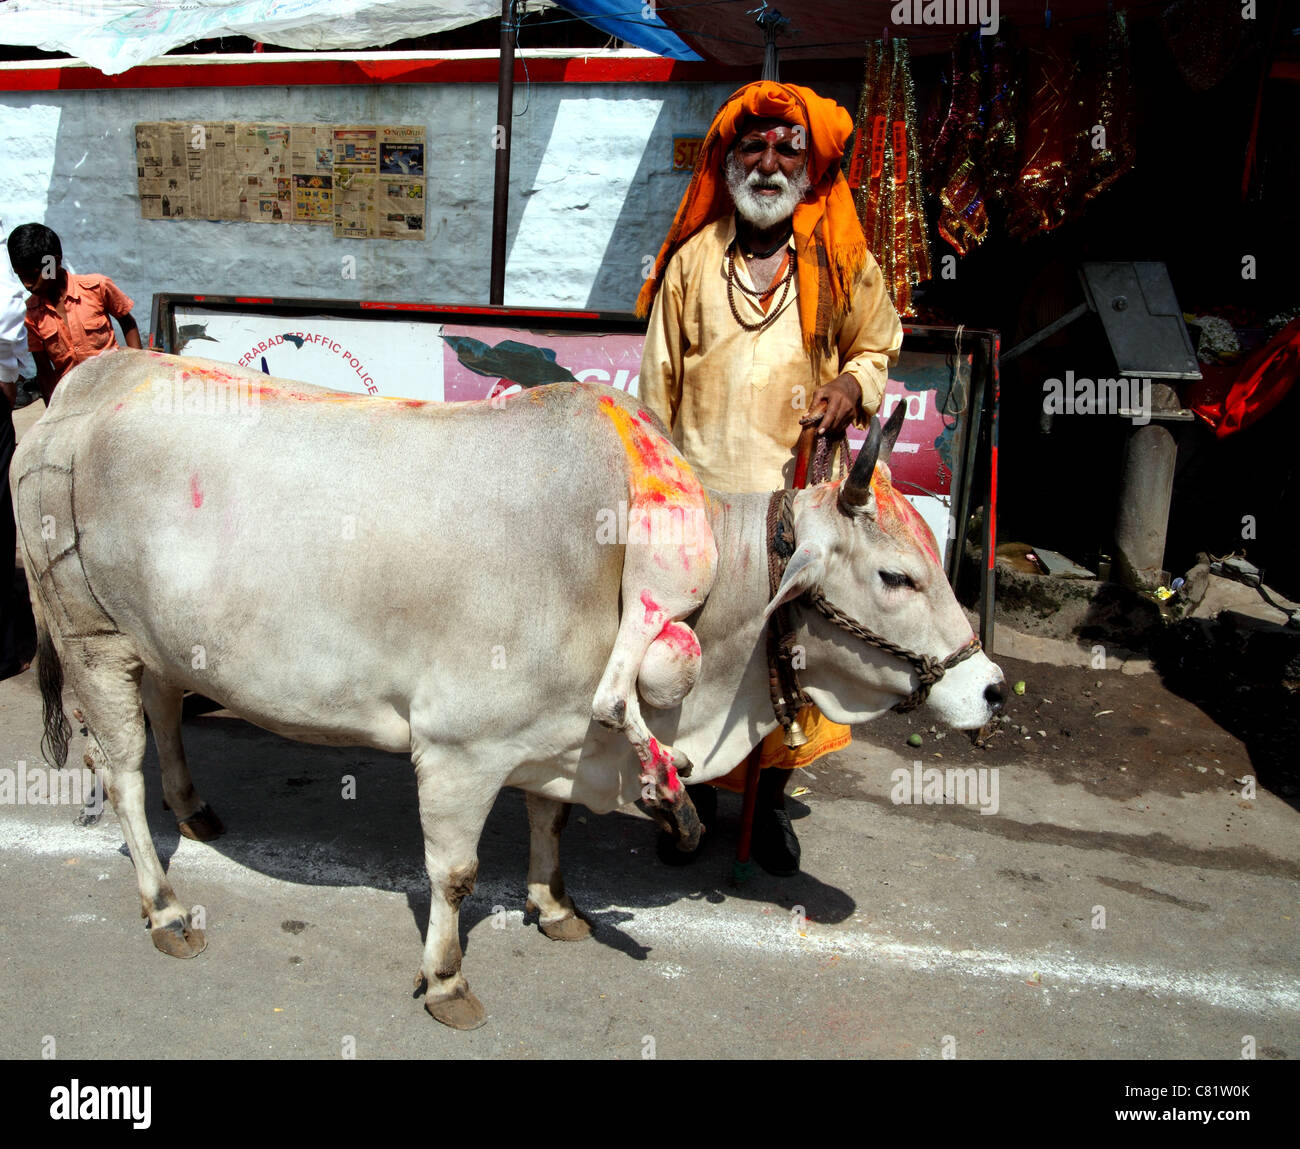 Heiliger Mann mit Heiligen fünfbeinige Kuh außerhalb Hindutempel, Hyderabad. Stockfoto